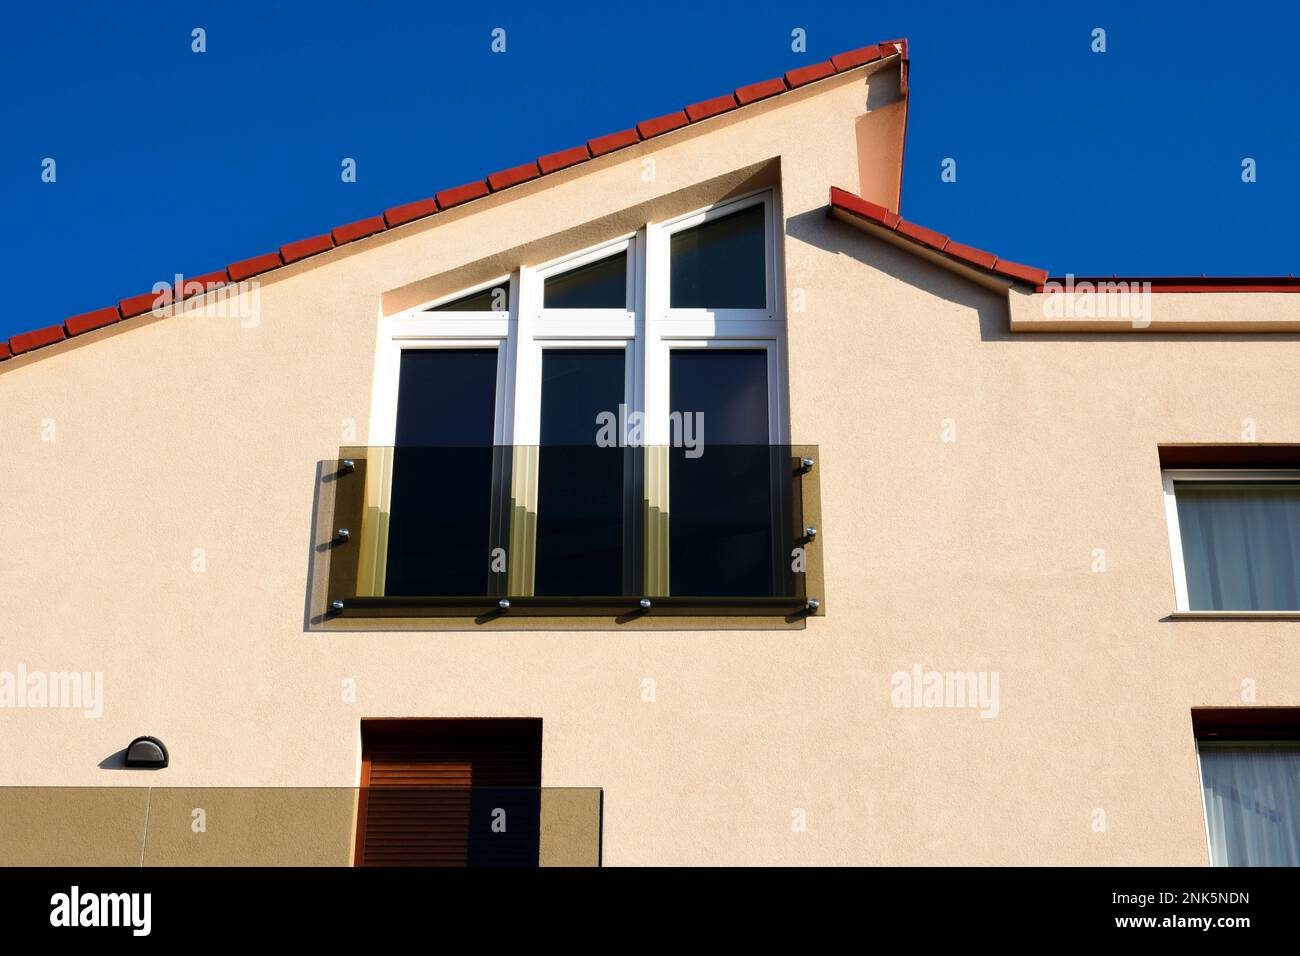 Balaustra di vetro su piccolo balcone francese con grande finestra a forma di trapezio. facciata in stucco. tetto in argilla inclinato. architettura residenziale moderna Foto Stock